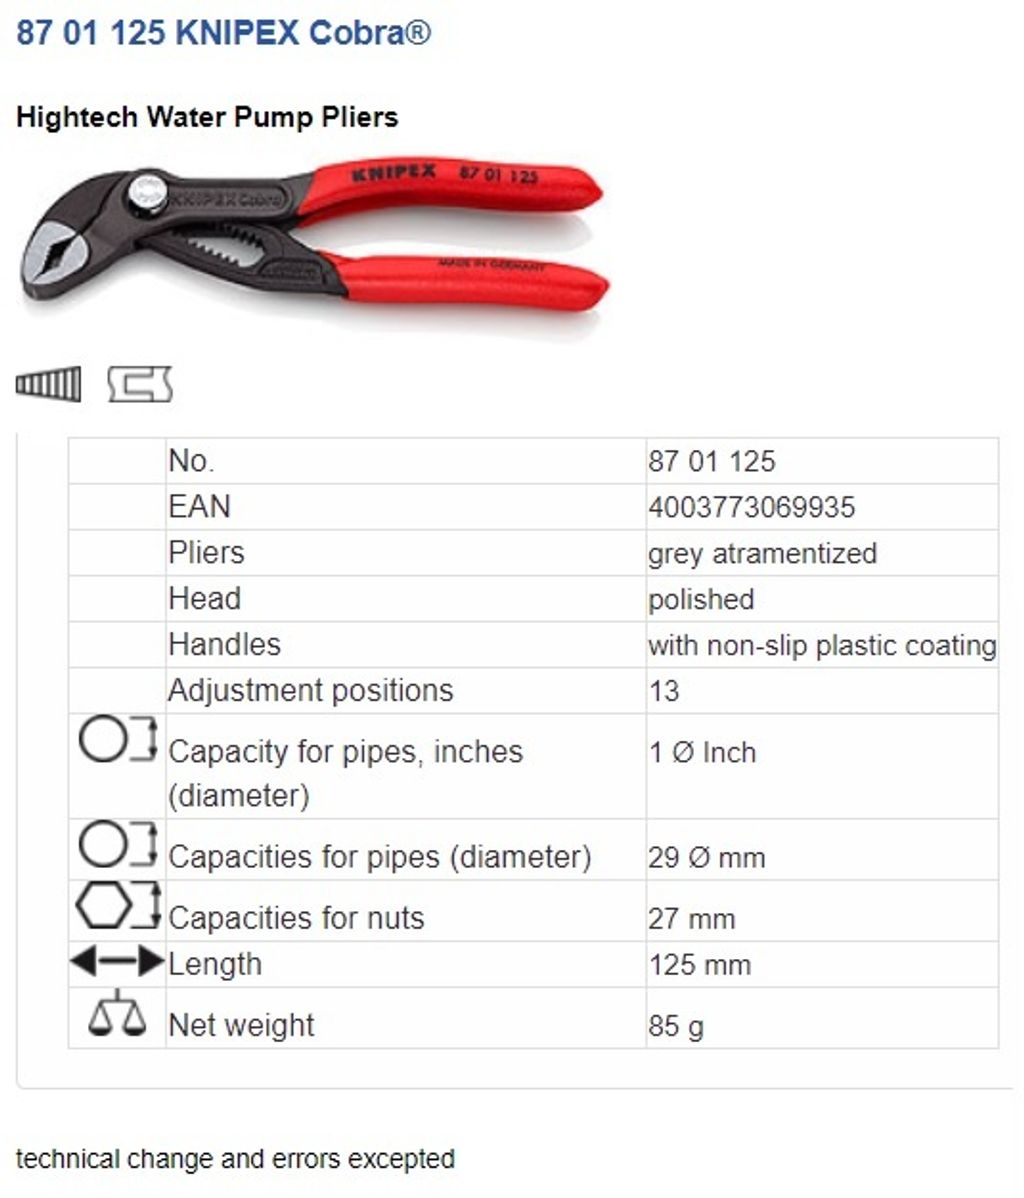 Knipex - Cobra® Water Pump Pliers PVC Grip 125mm